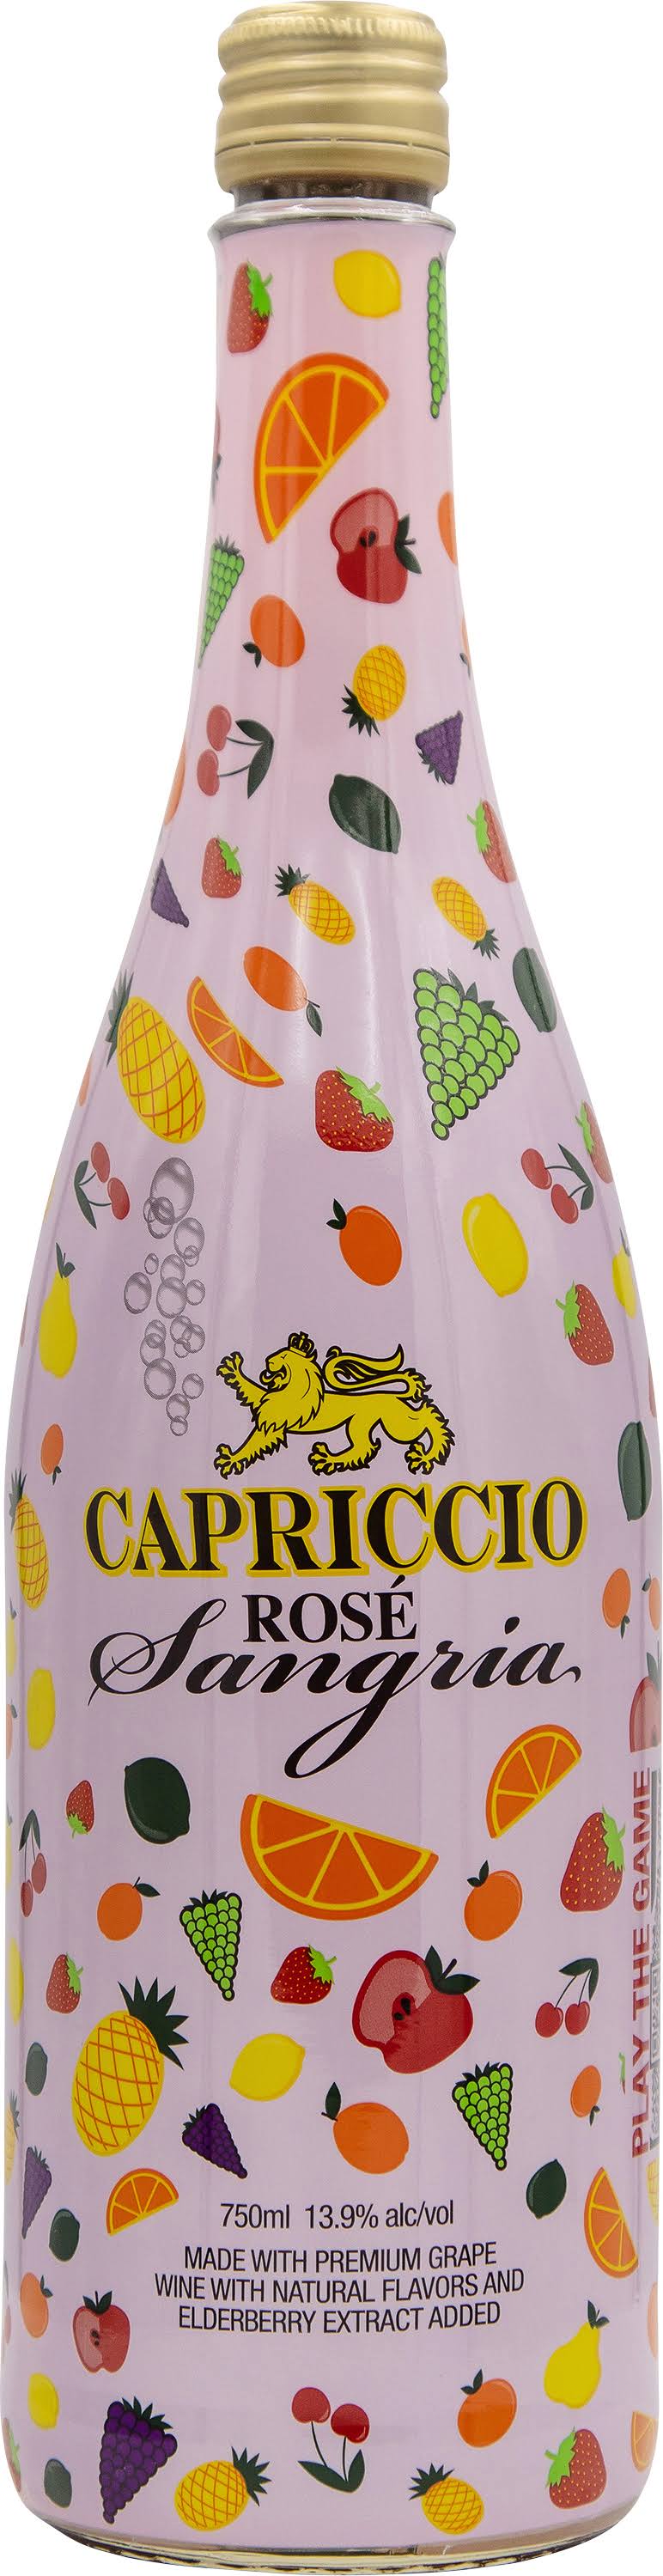 Capriccio Sangria, Rose - 750 ml